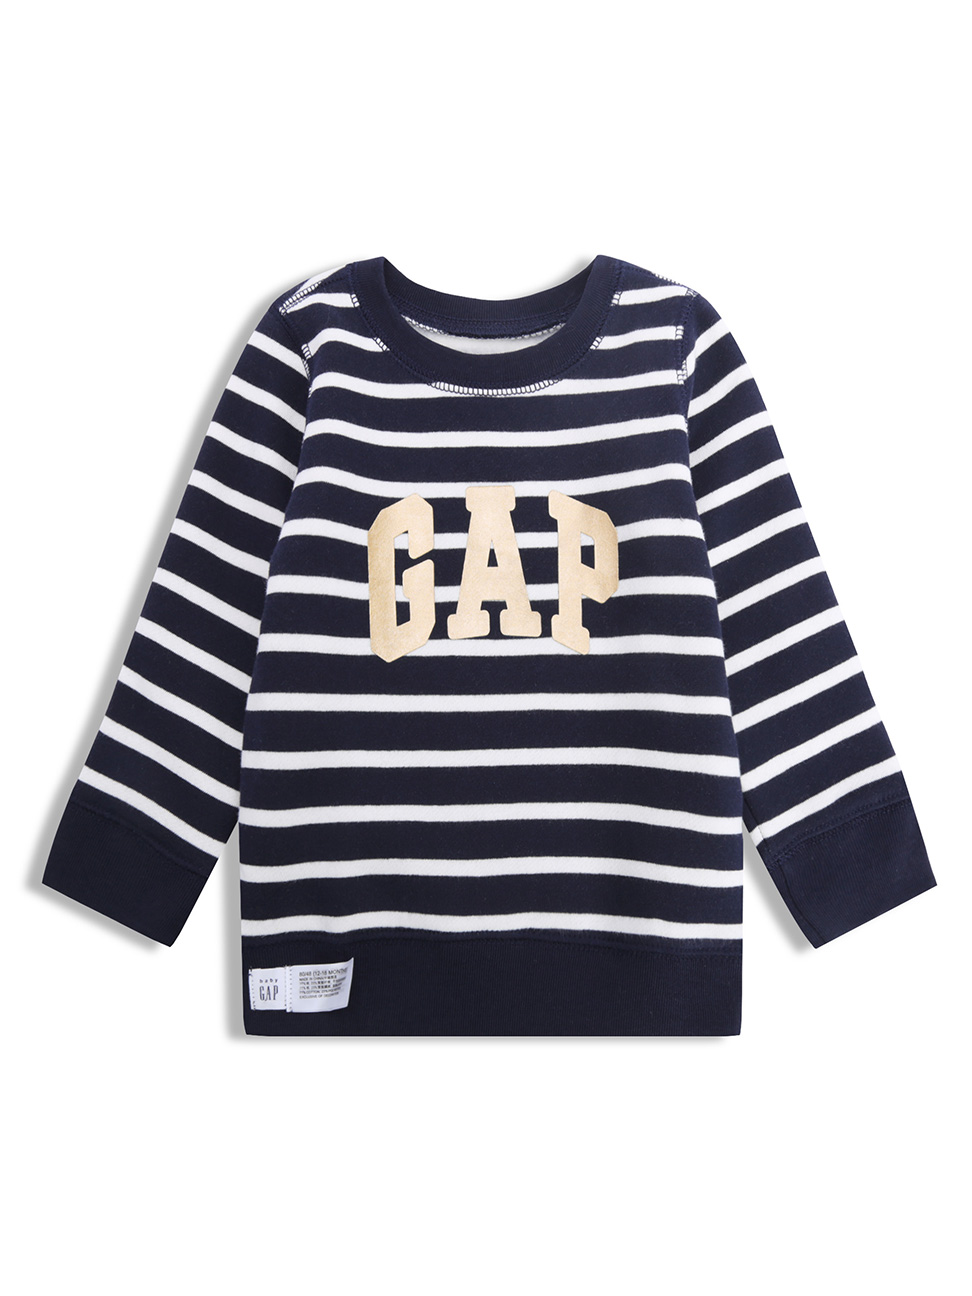 嬰兒裝|Logo條紋圓領上衣-藍白條紋